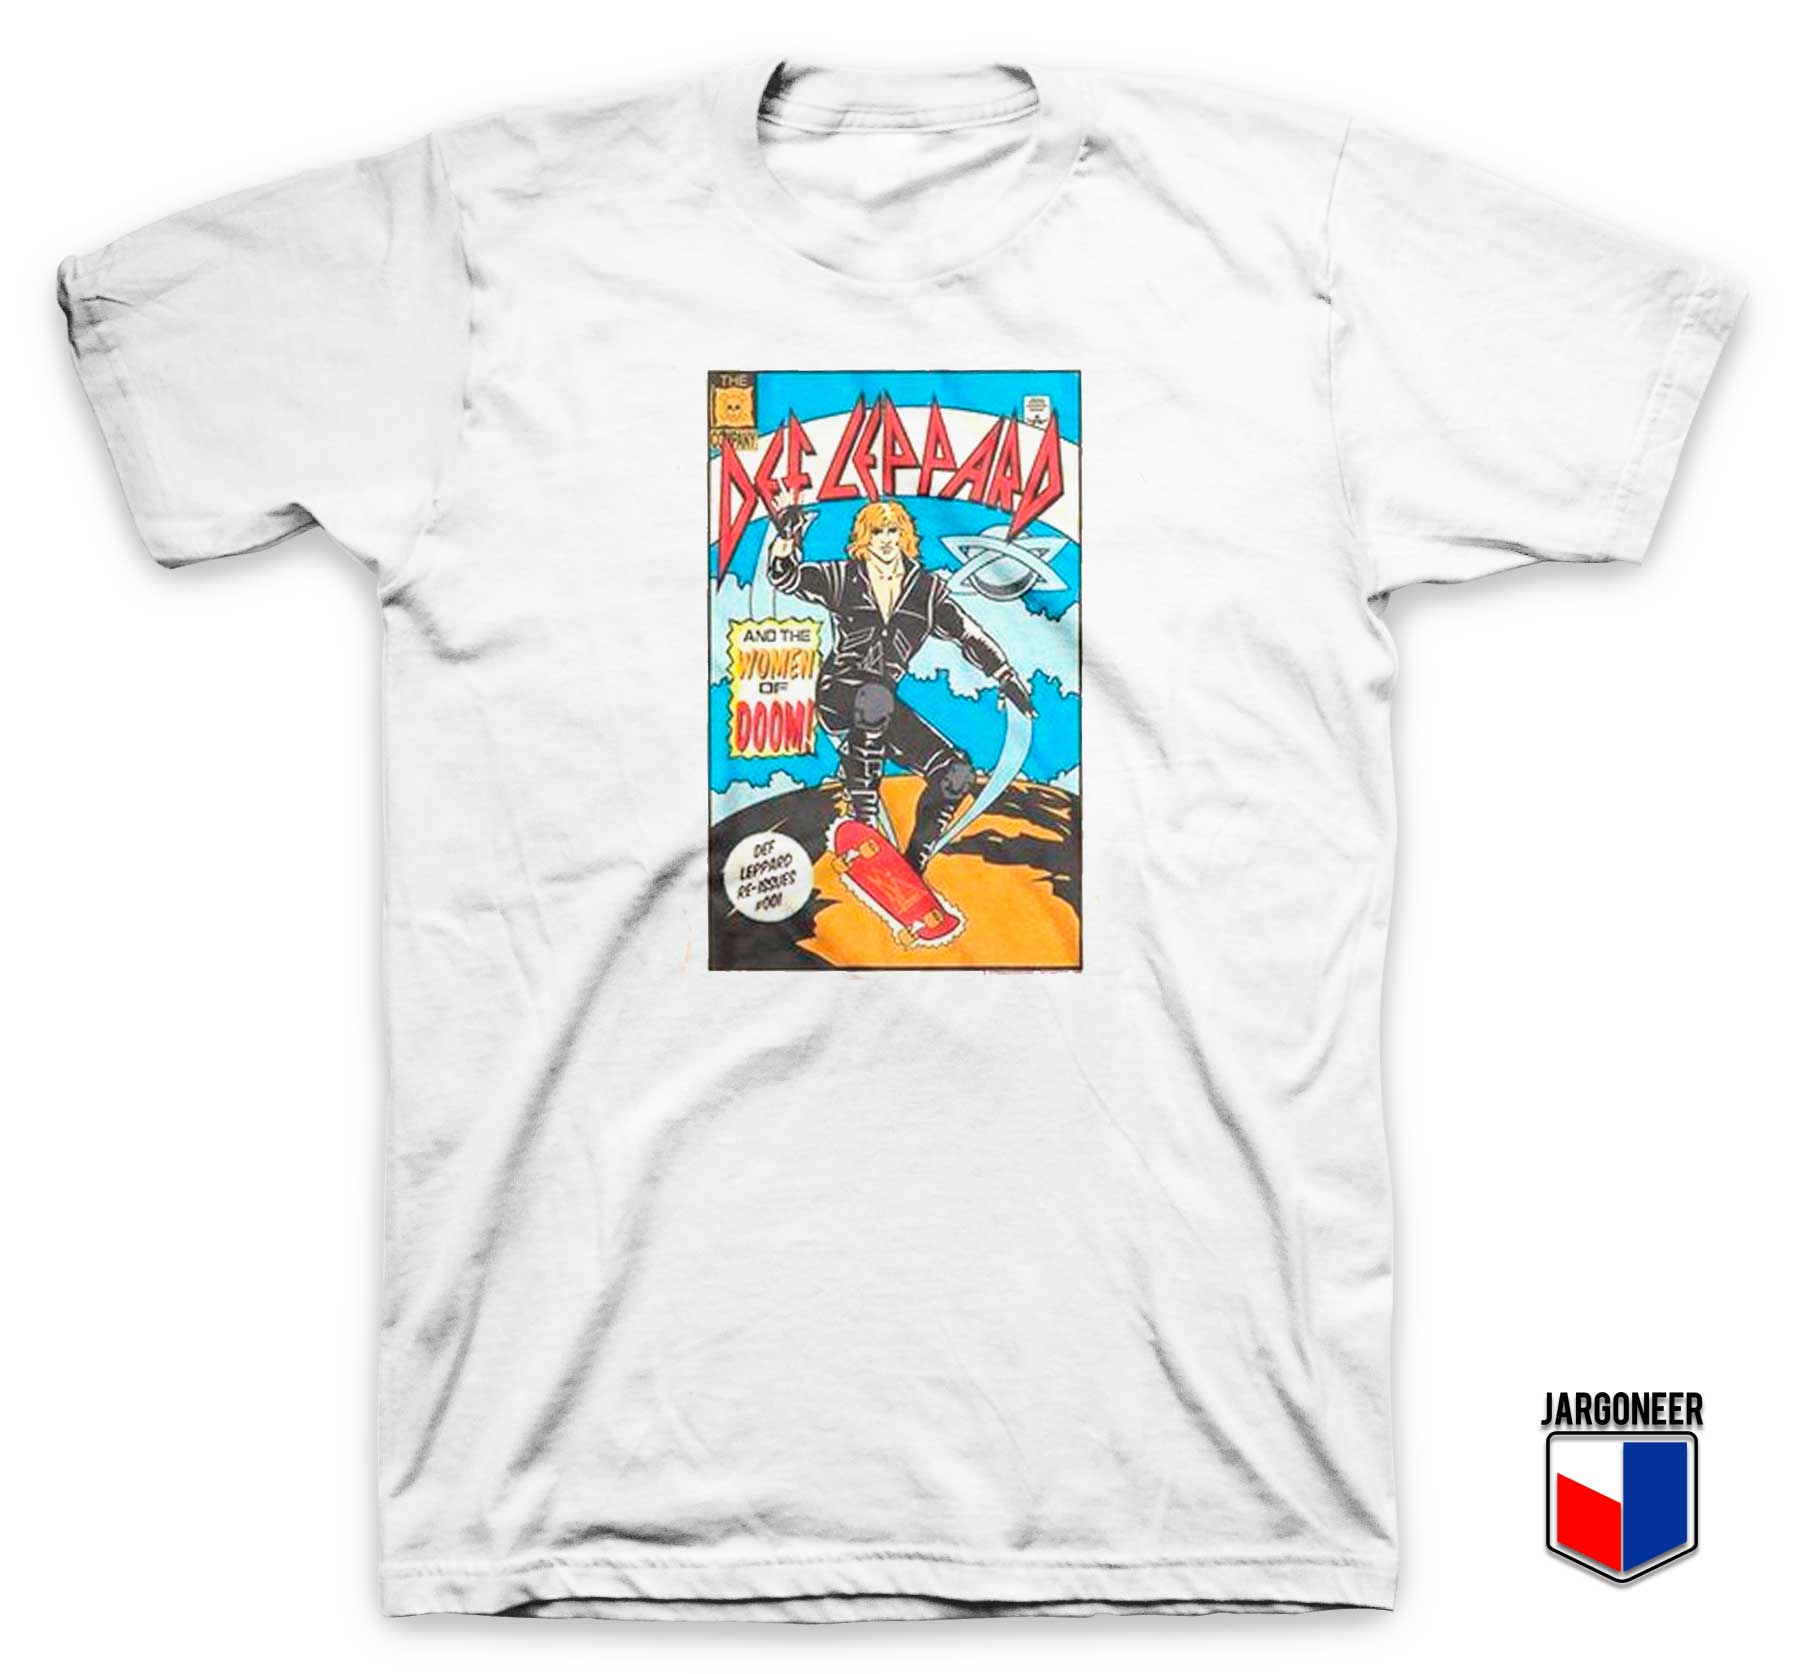 Def Leppard Comic T Shirt - Shop Unique Graphic Cool Shirt Designs